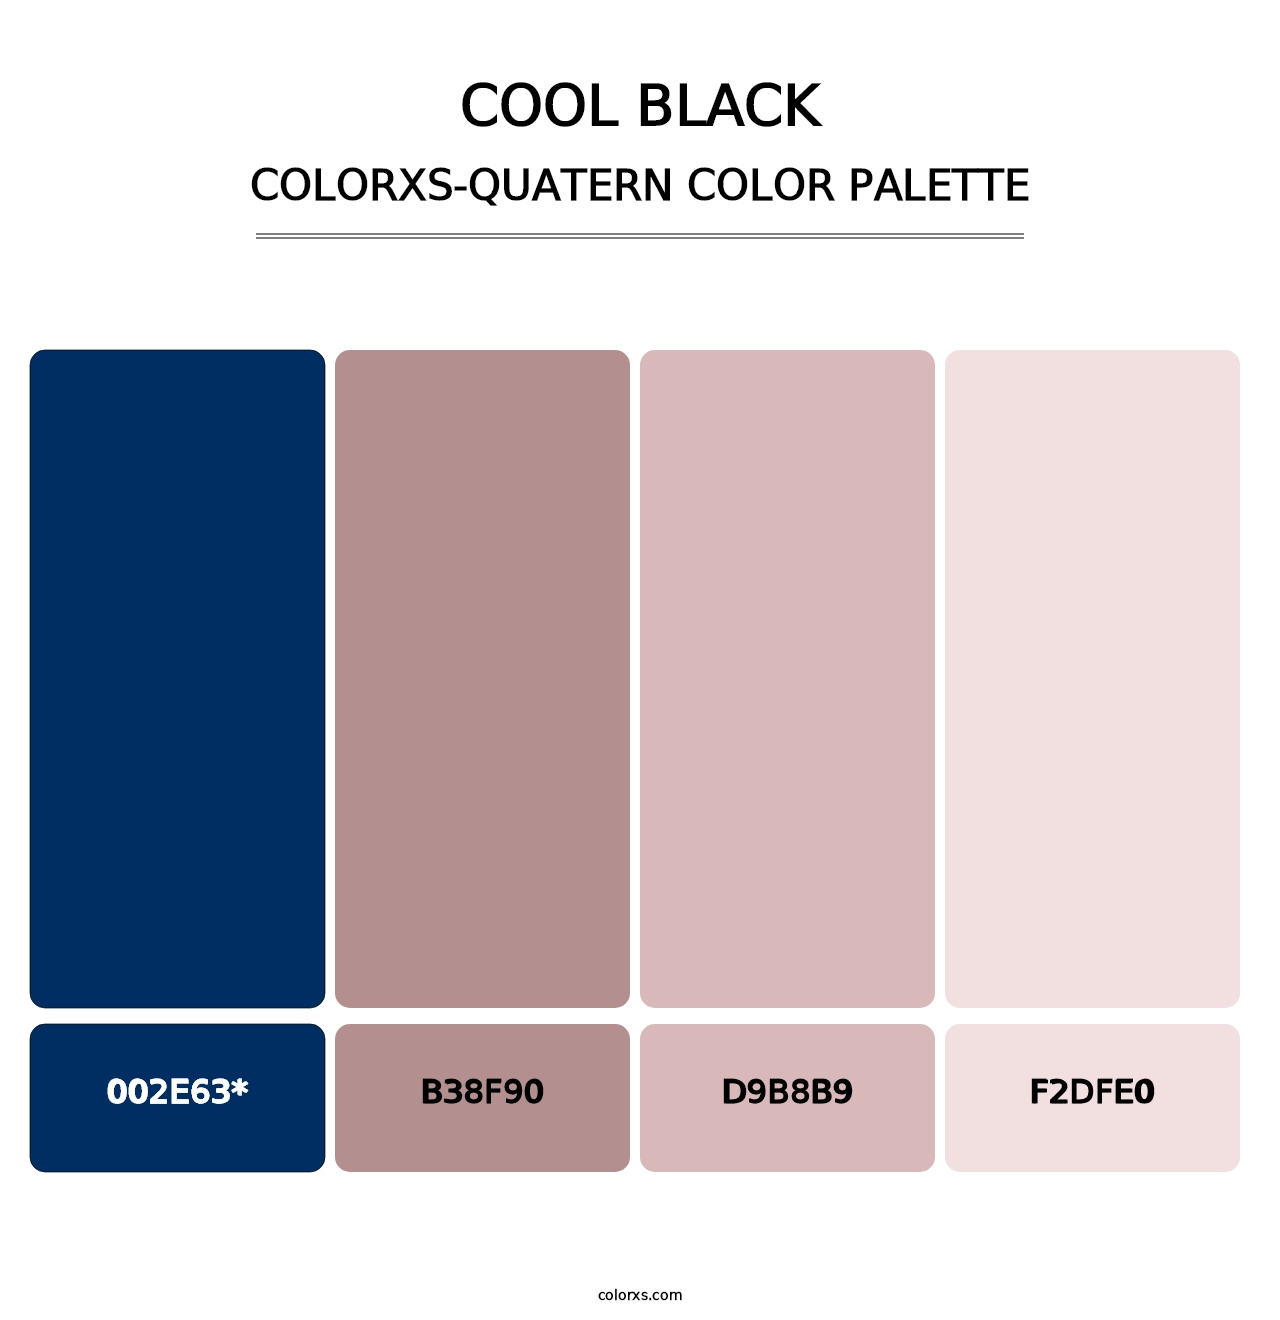 Cool Black - Colorxs Quatern Palette